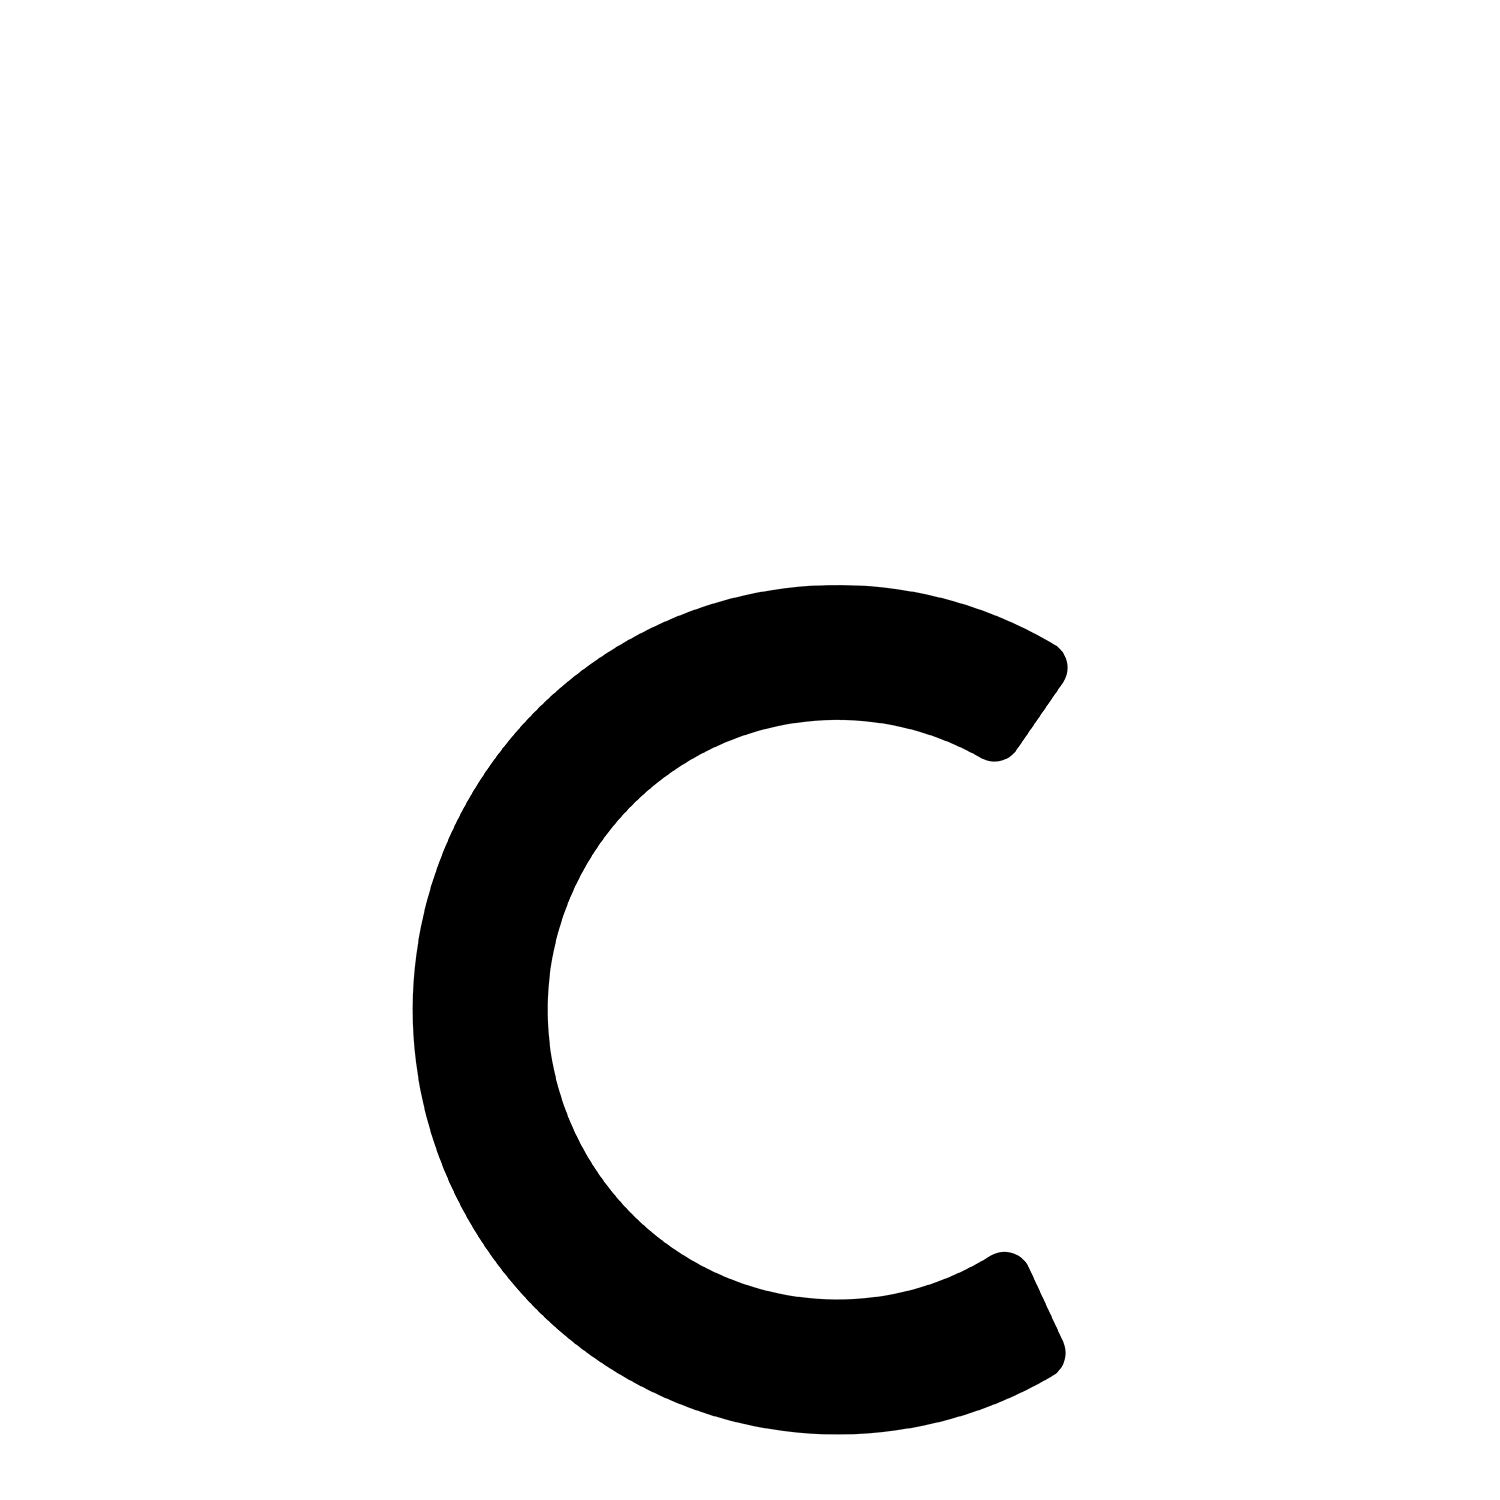 Samoprzylepny numer domu „C” - 152 mm w kolorze czarnym